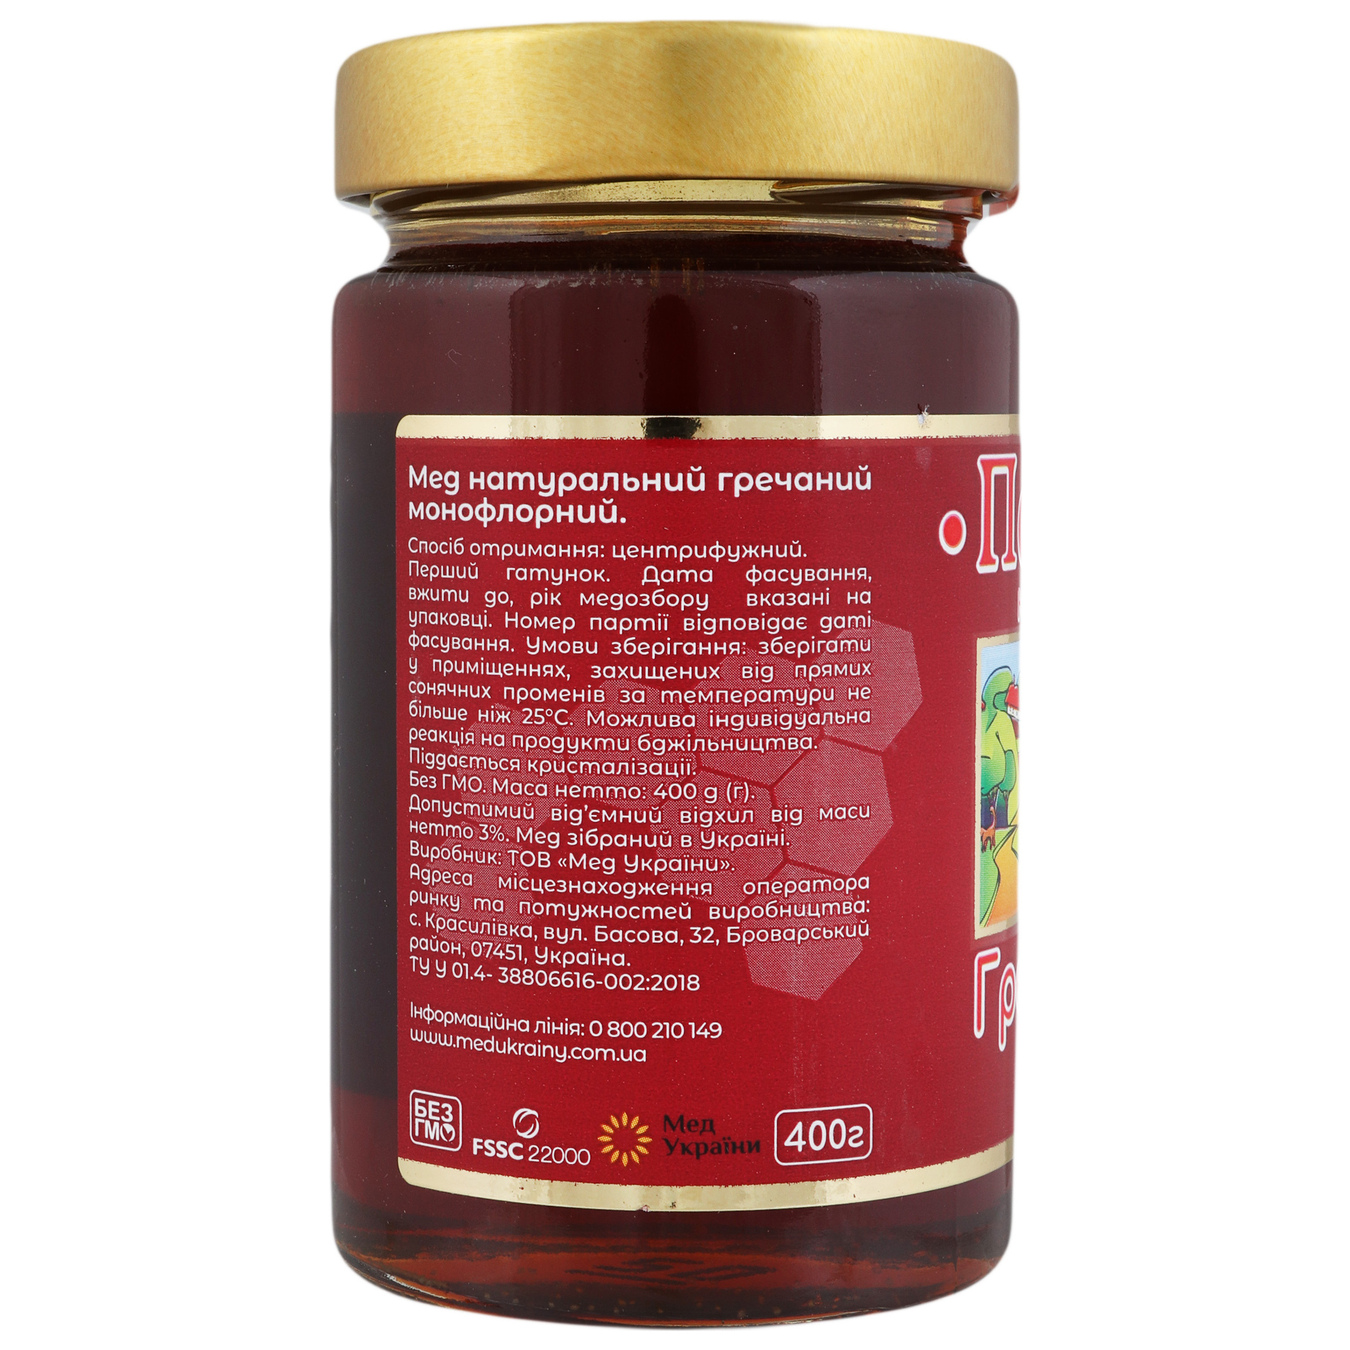 Buckwheat honey Pasika natural glass jar 400g 2